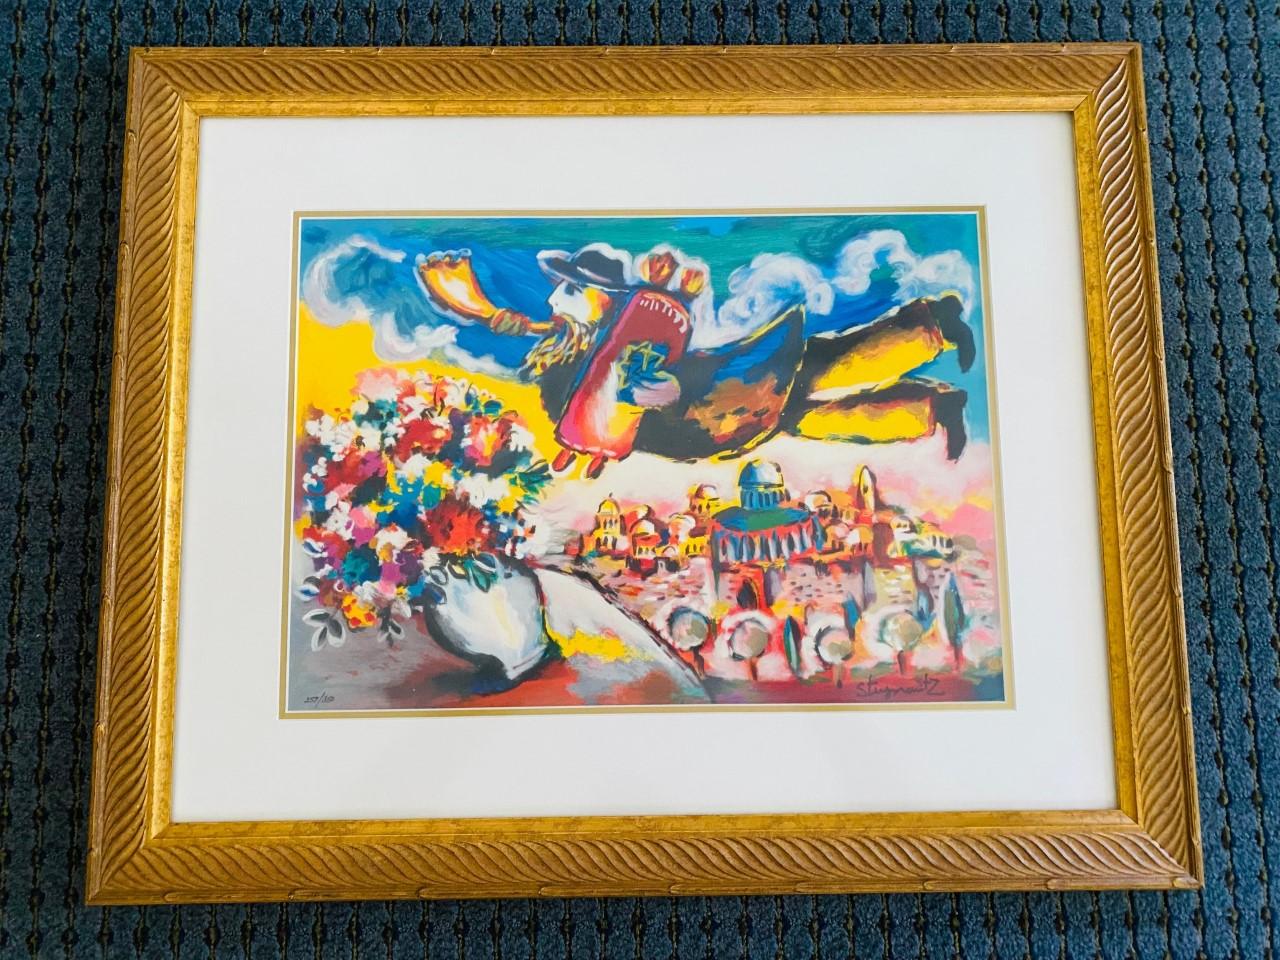 Faisant preuve de talent dès son plus jeune âge, l'artiste d'origine polonaise Zamy Steynovitz a utilisé des couleurs riches et vibrantes dans ses œuvres après qu'un voyage en Amérique du Sud dans les années 80 a renforcé son intérêt pour les sujets